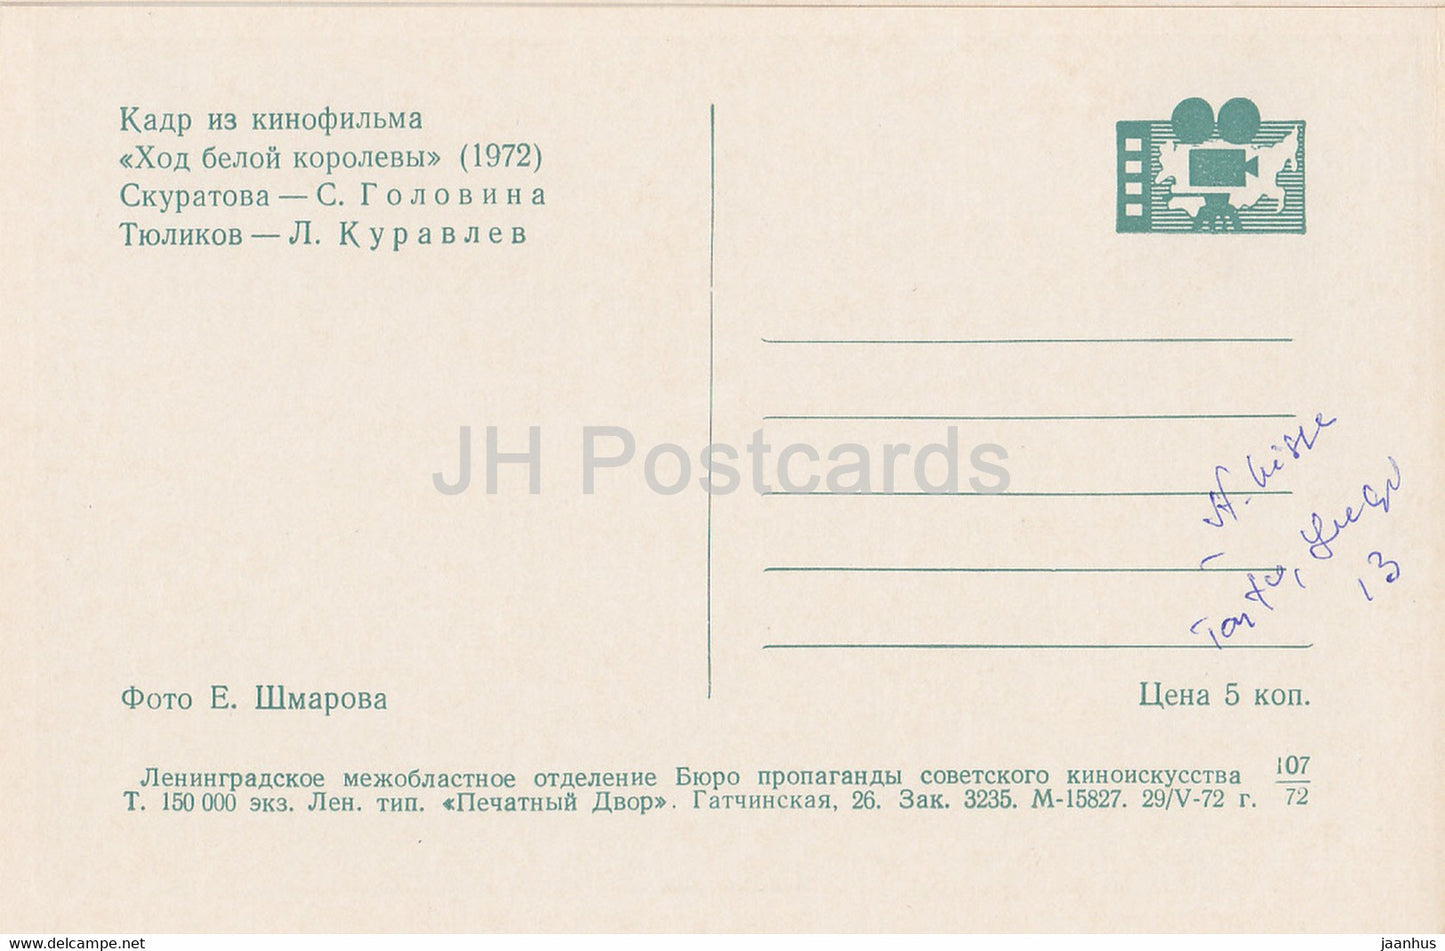 White Queen's Move – Schauspielerin S. Golovina, Schauspieler L. Kuravlyov – Film – Film – Sowjet – 1972 – Russland UdSSR – unbenutzt